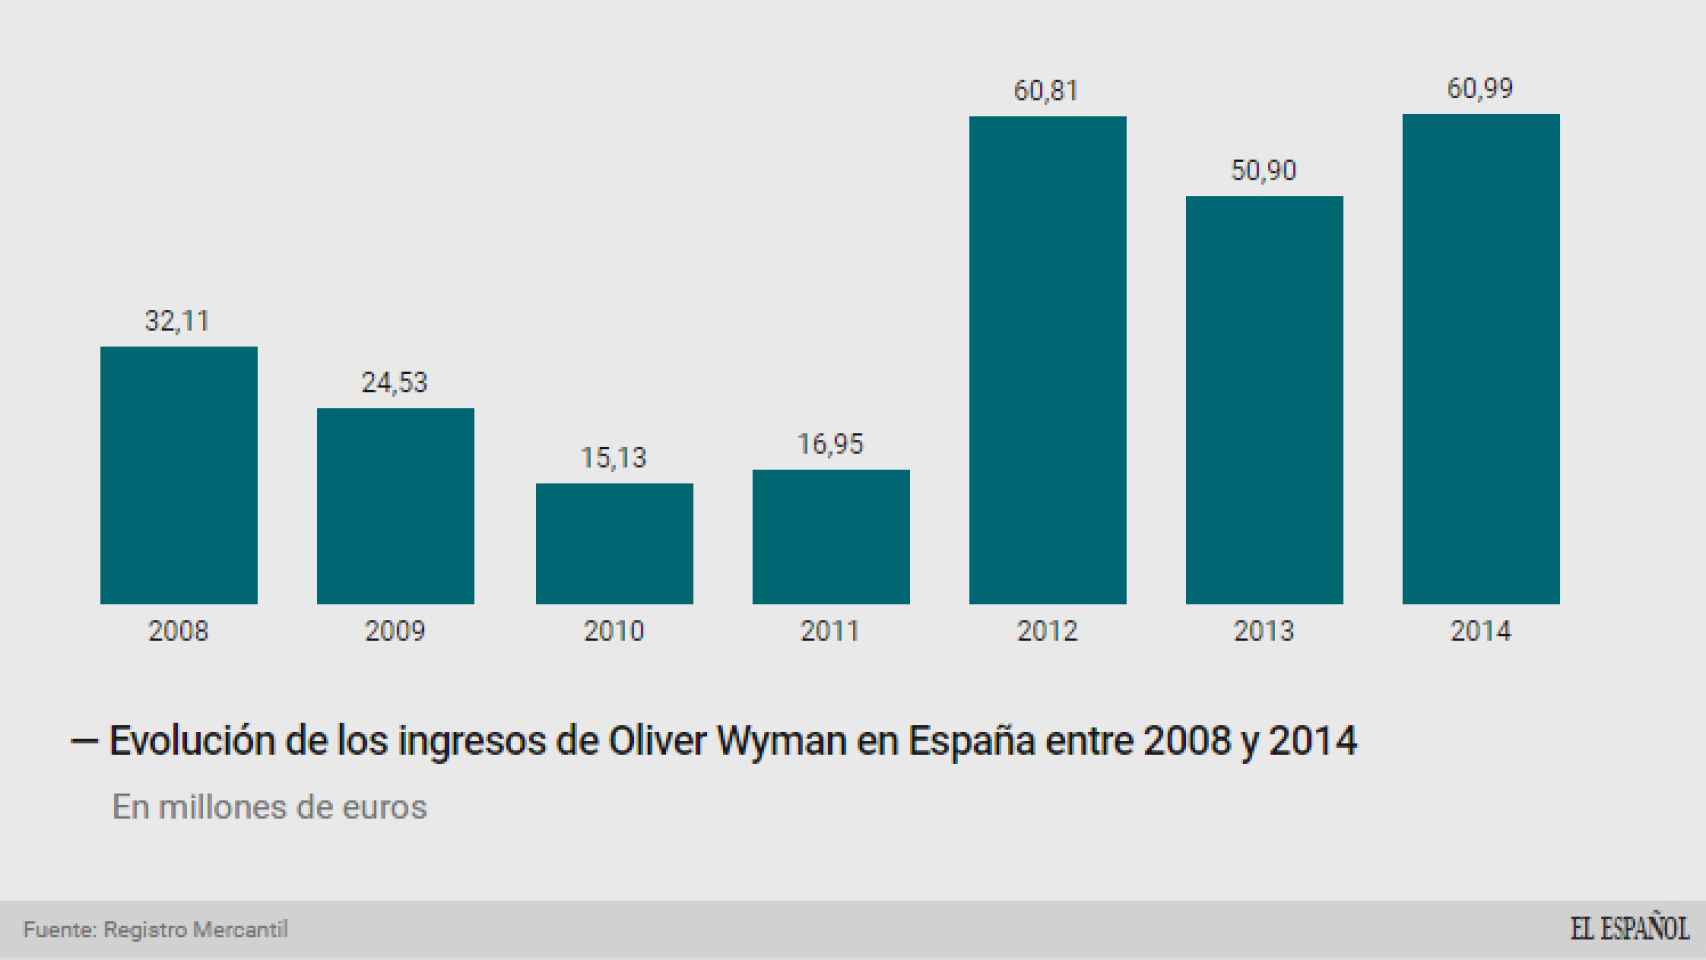 Evolución de los ingresos de Oliver Wyman en España.